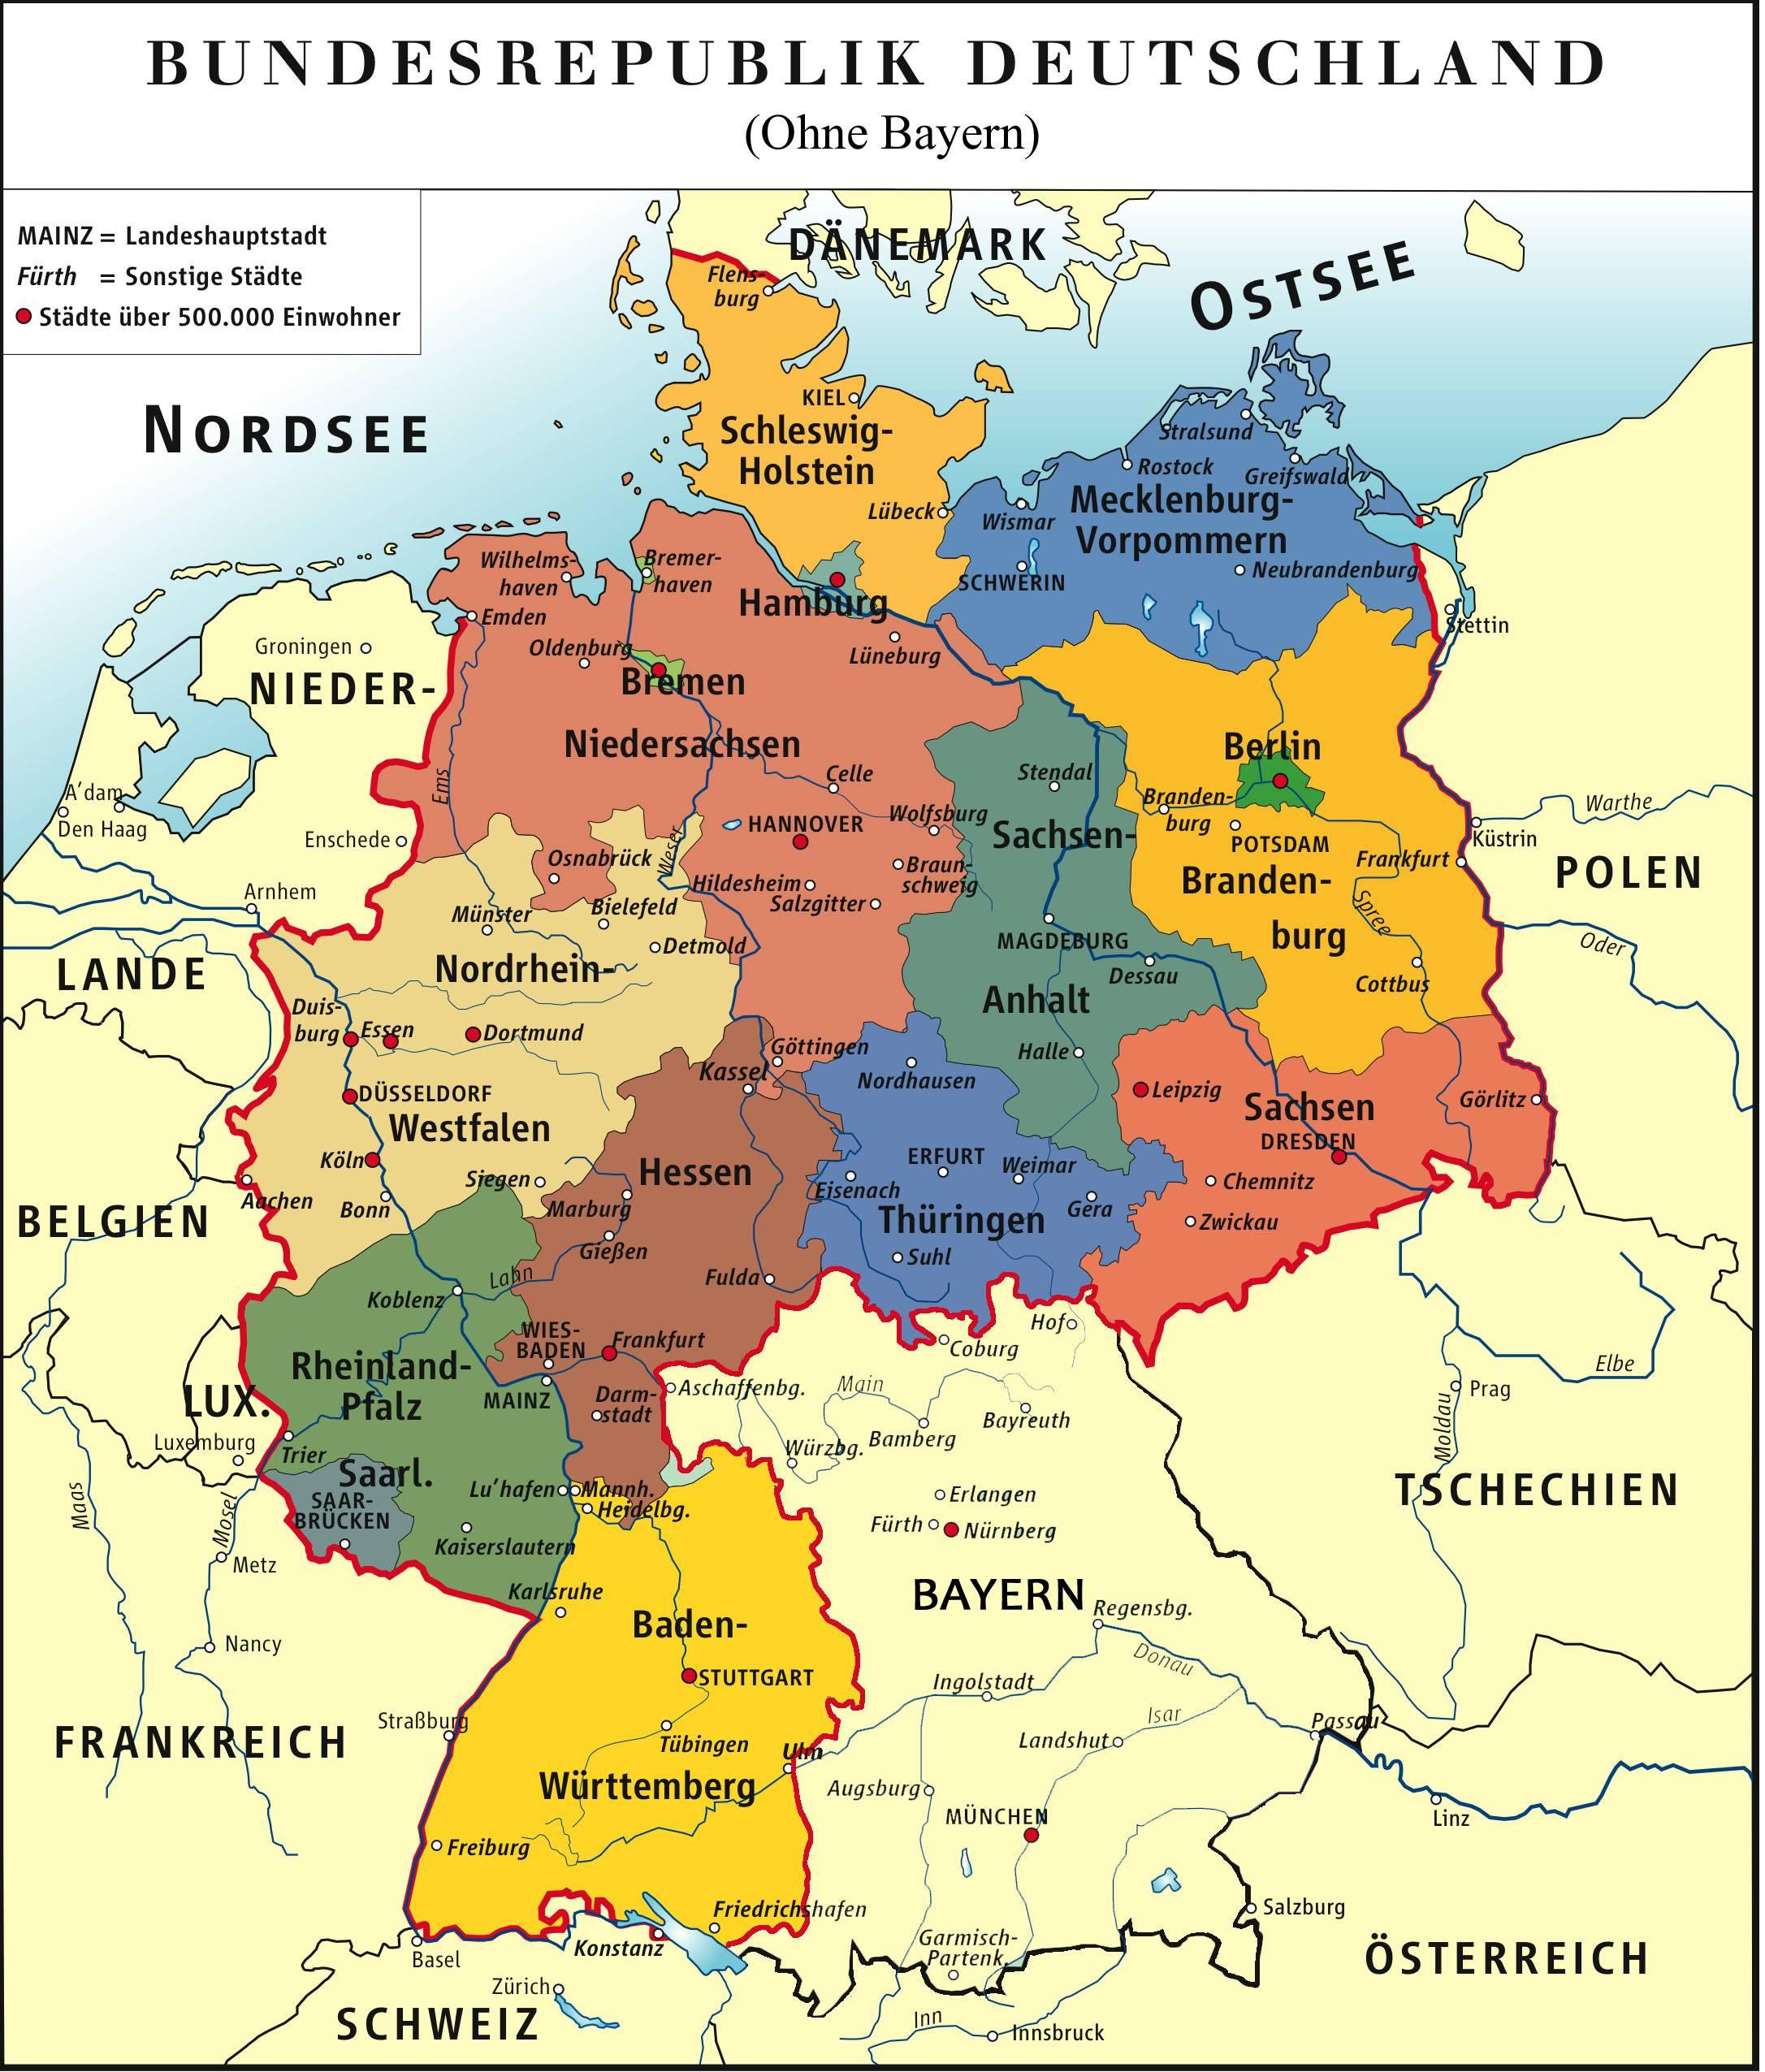 németország bayern térkép Nemetorszag Bayern Terkep németország bayern térkép